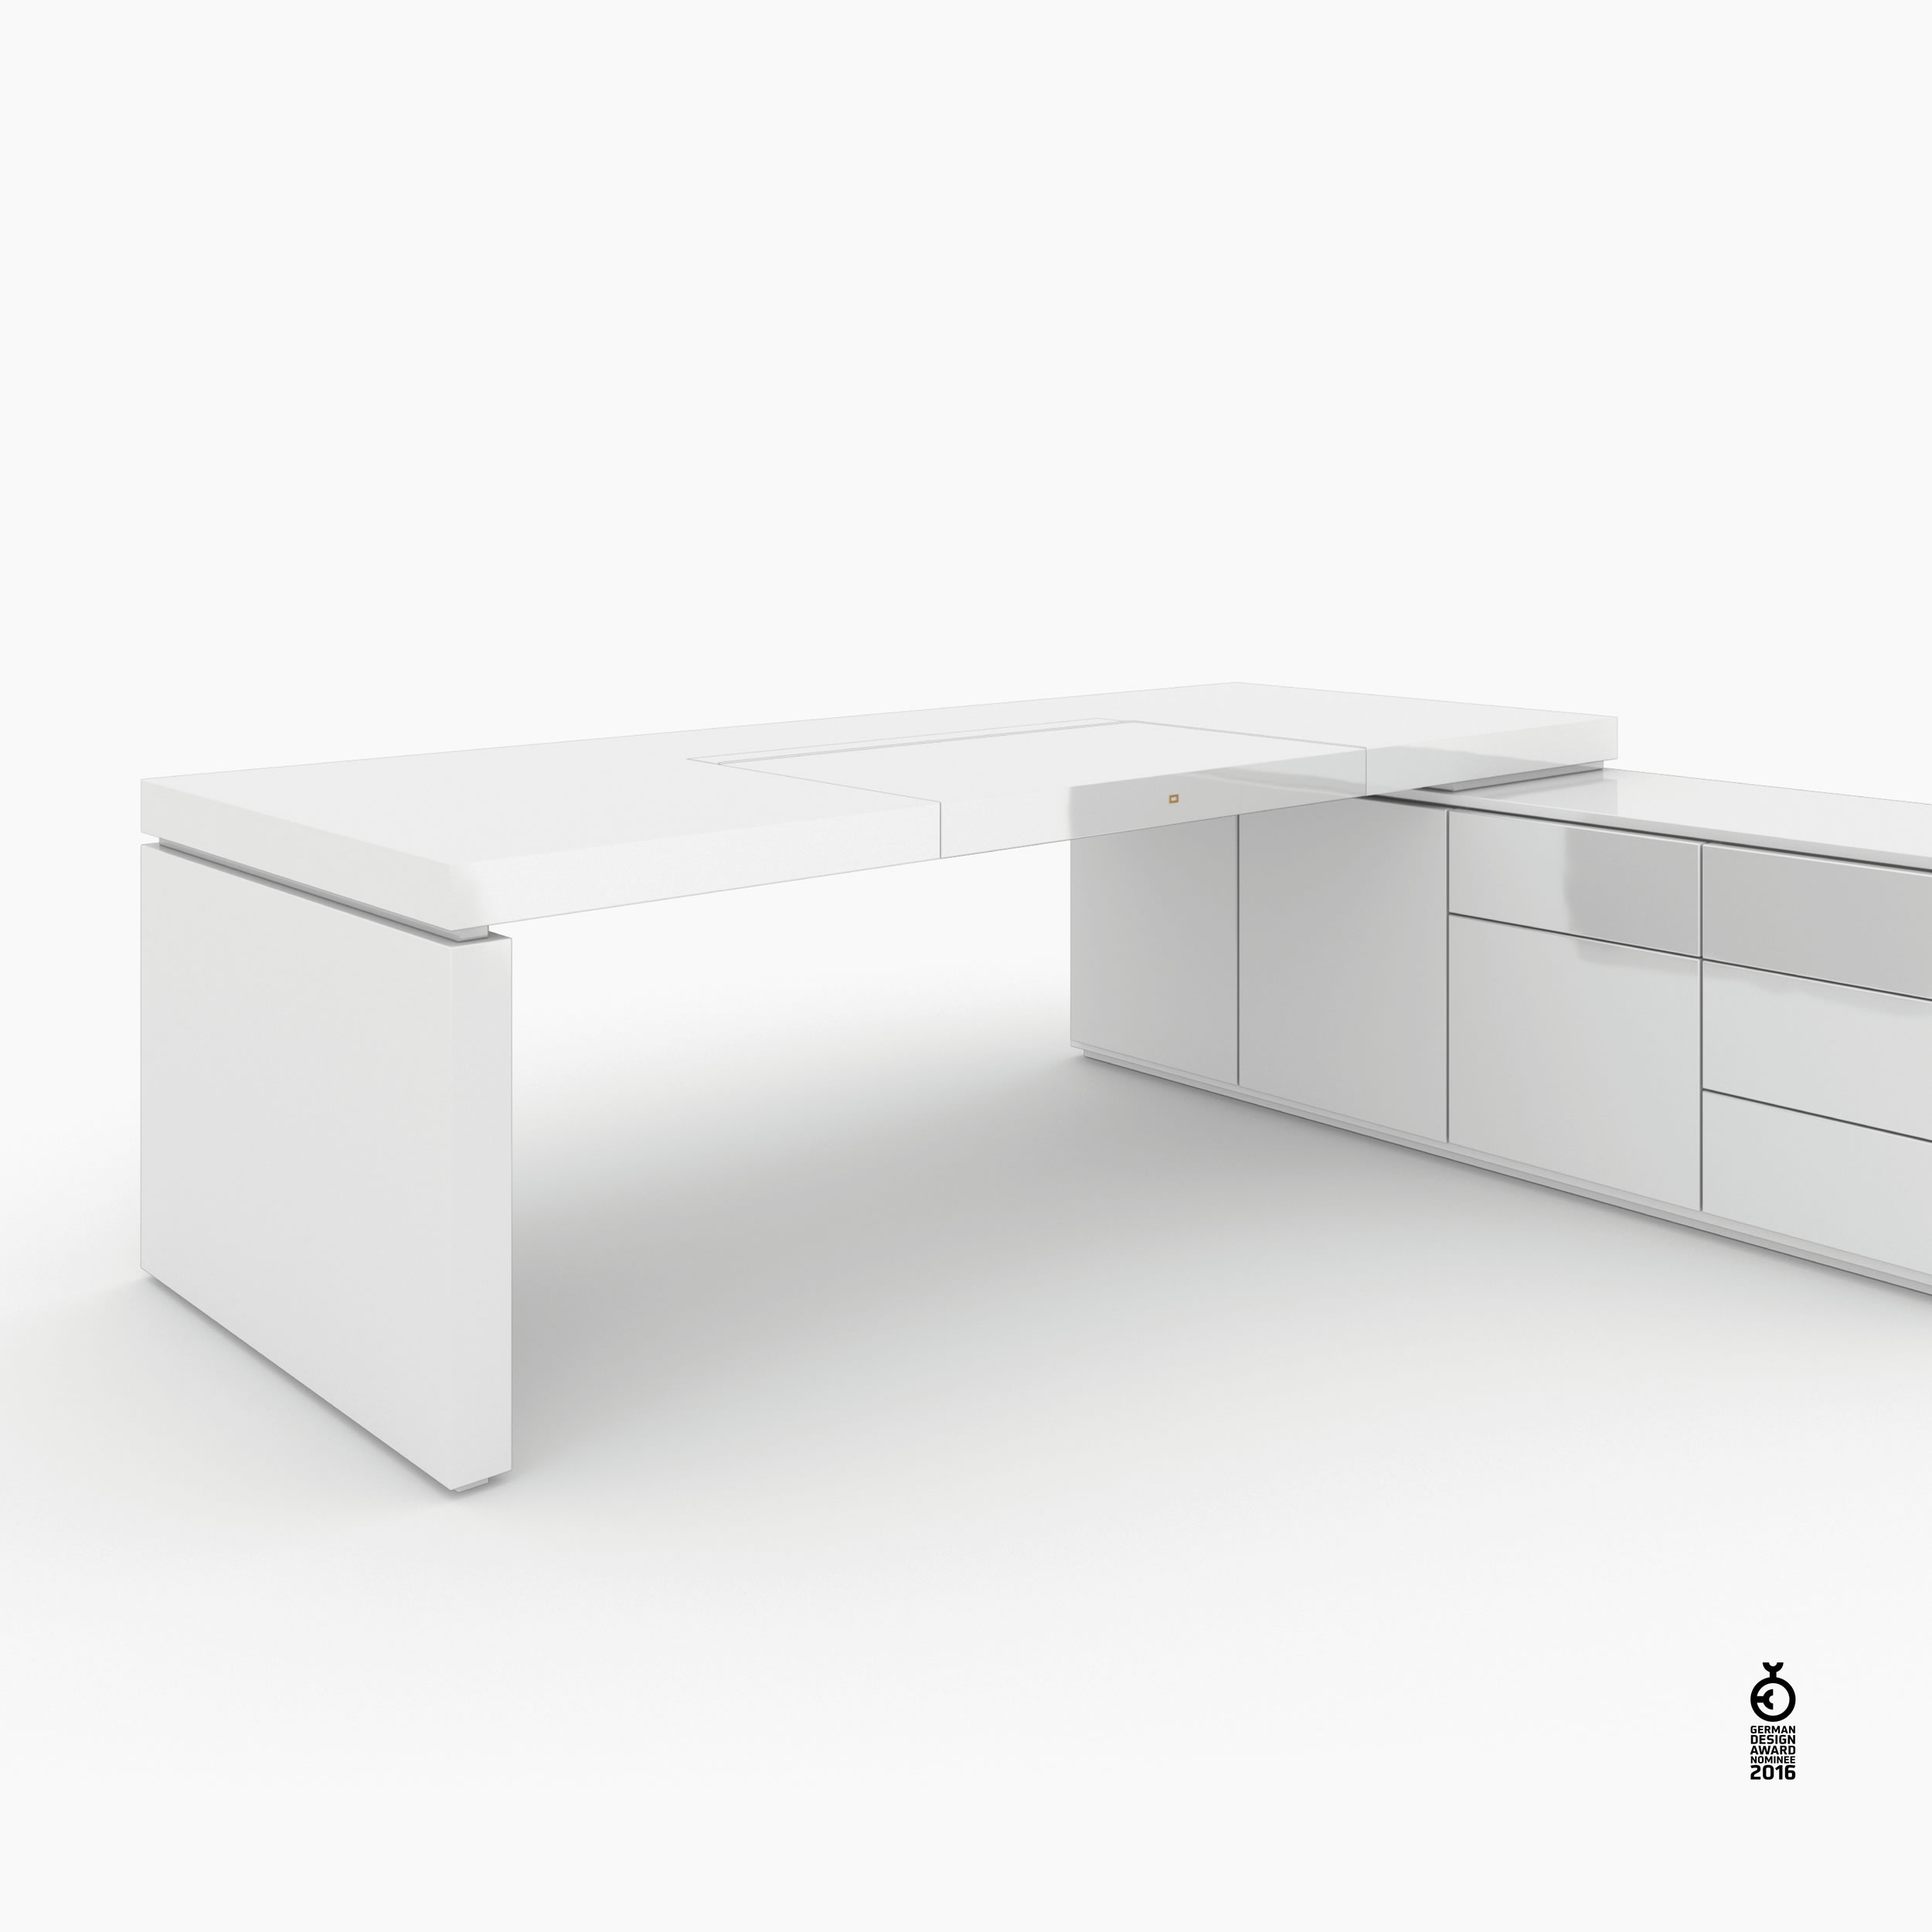 Schreibtisch scheiben und quader weiss white room Chefzimmer sculptural furniture Schreibtische FS 94 FELIX SCHWAKE